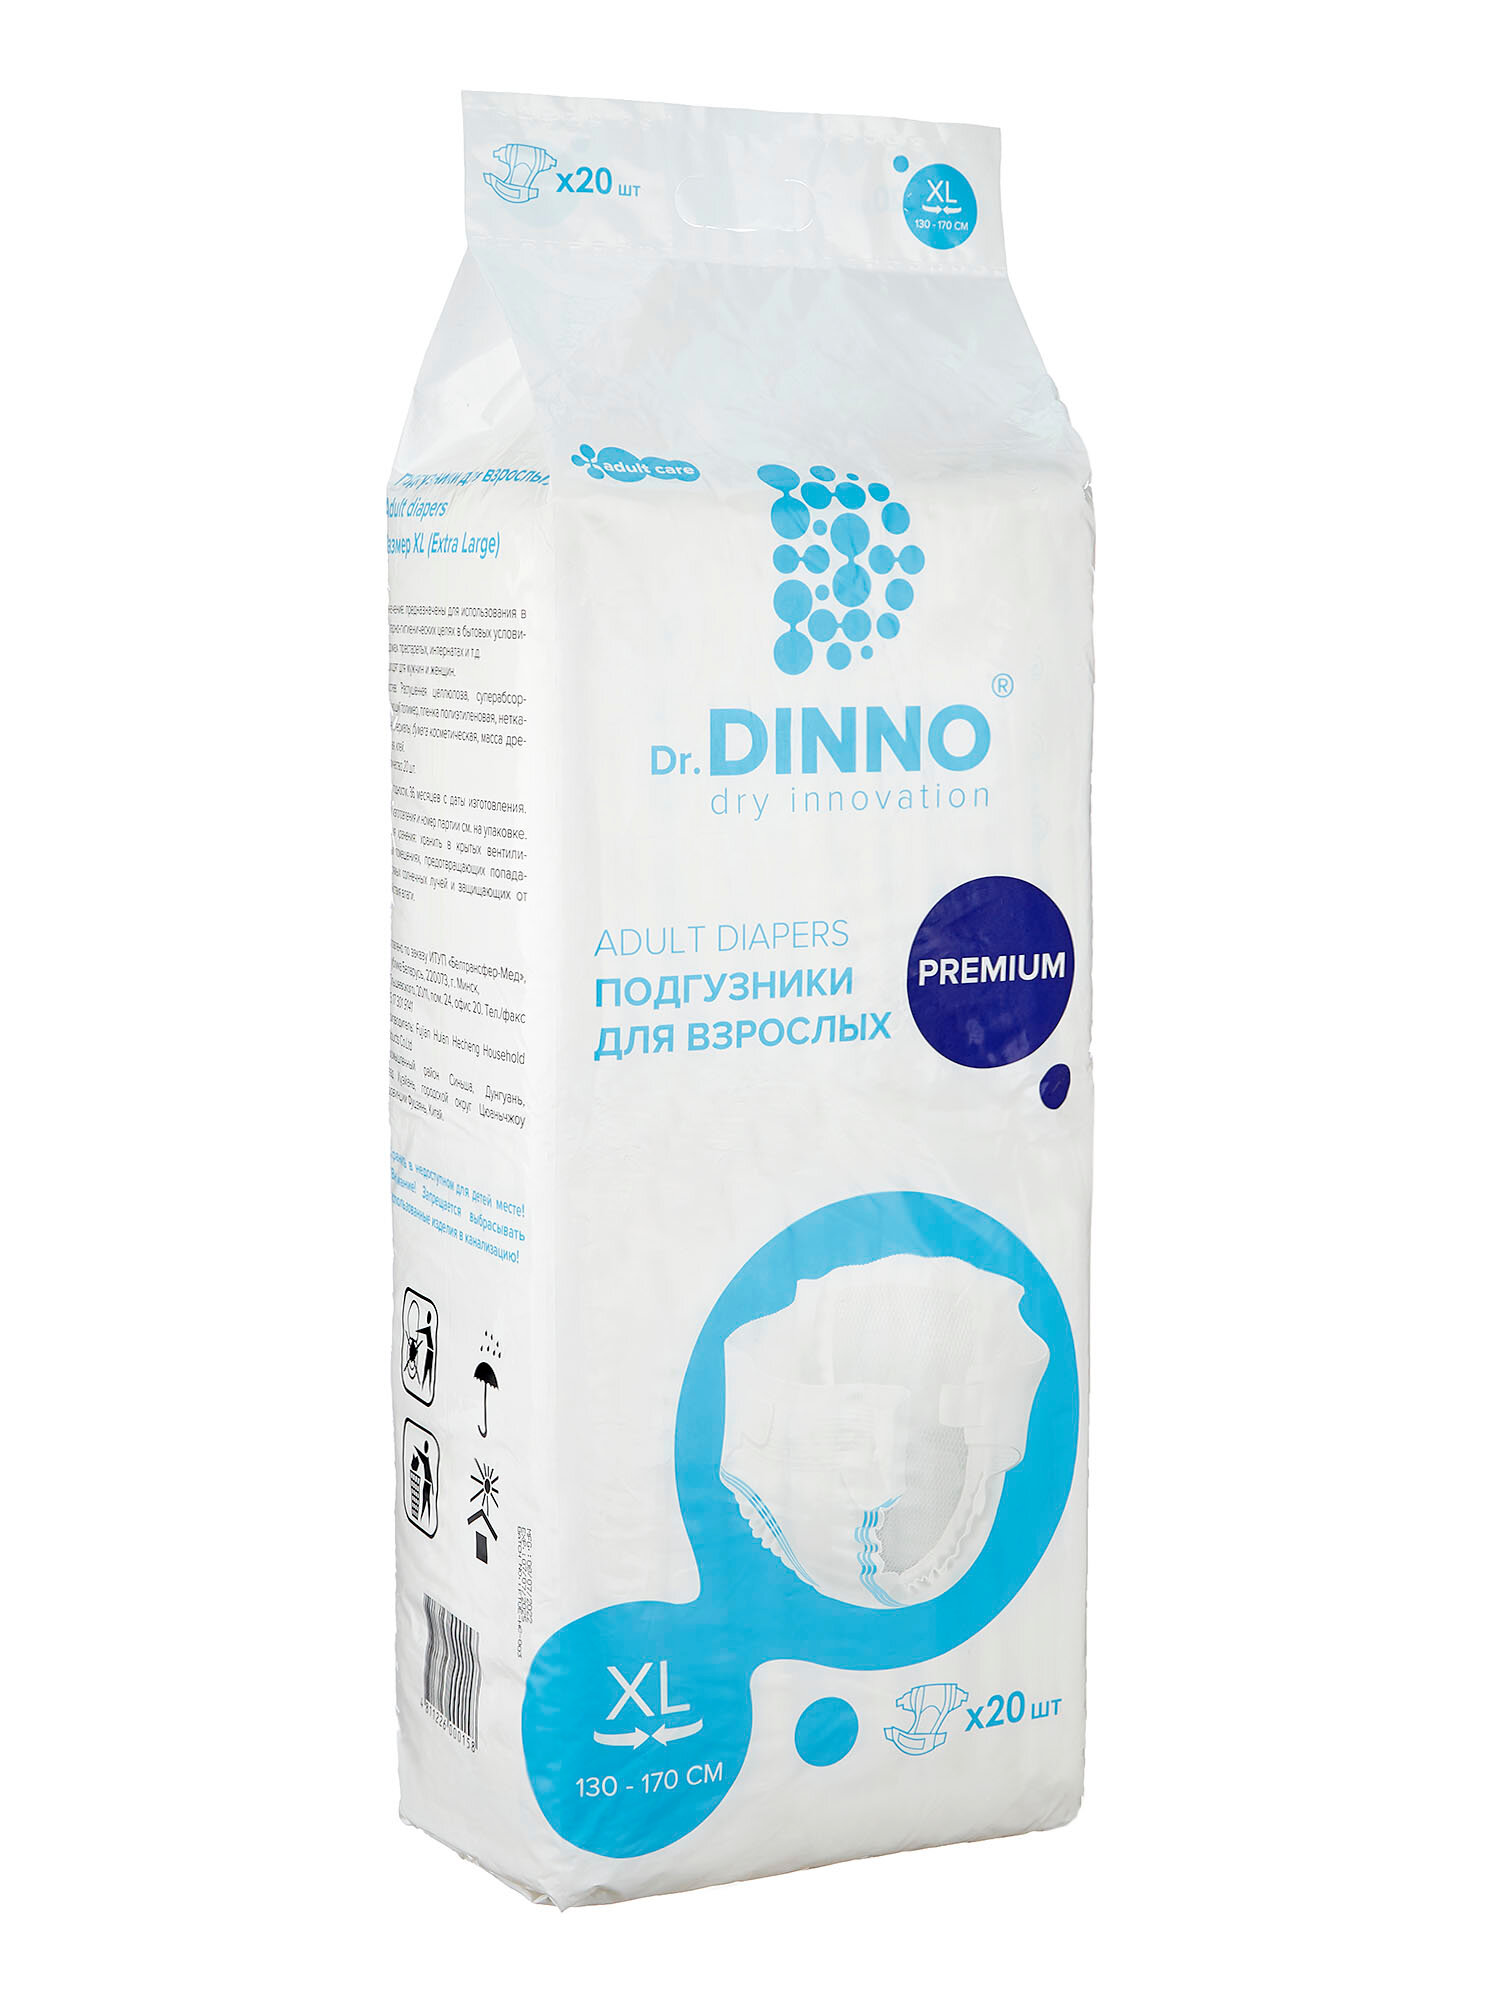 Подгузники для взрослых Dr.DINNO Premium размер ХL 20 шт